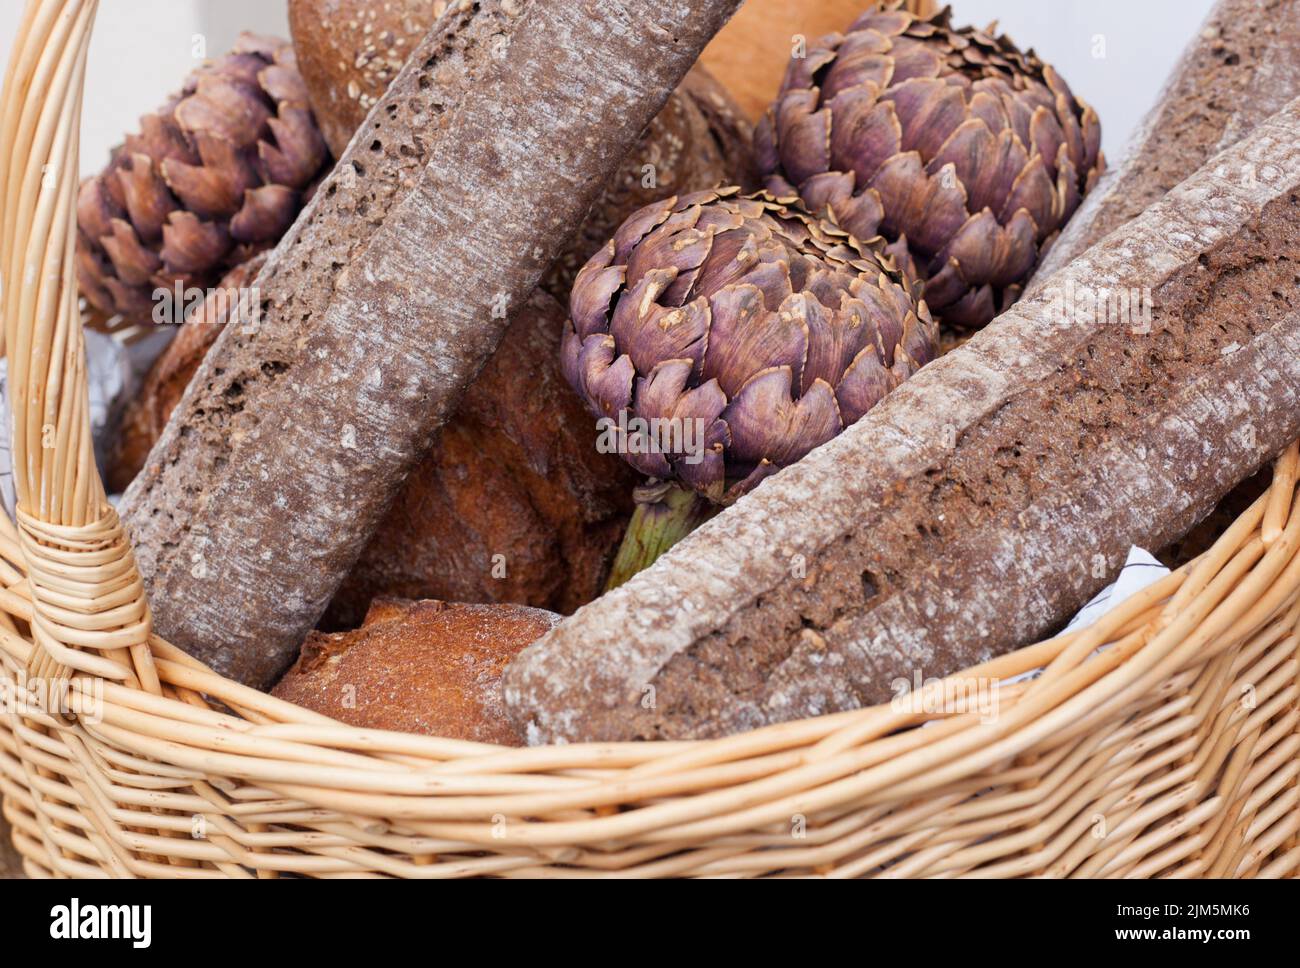 Primer plano de un surtido rústico de pan recién horneado en una cesta de pan. Foto de stock